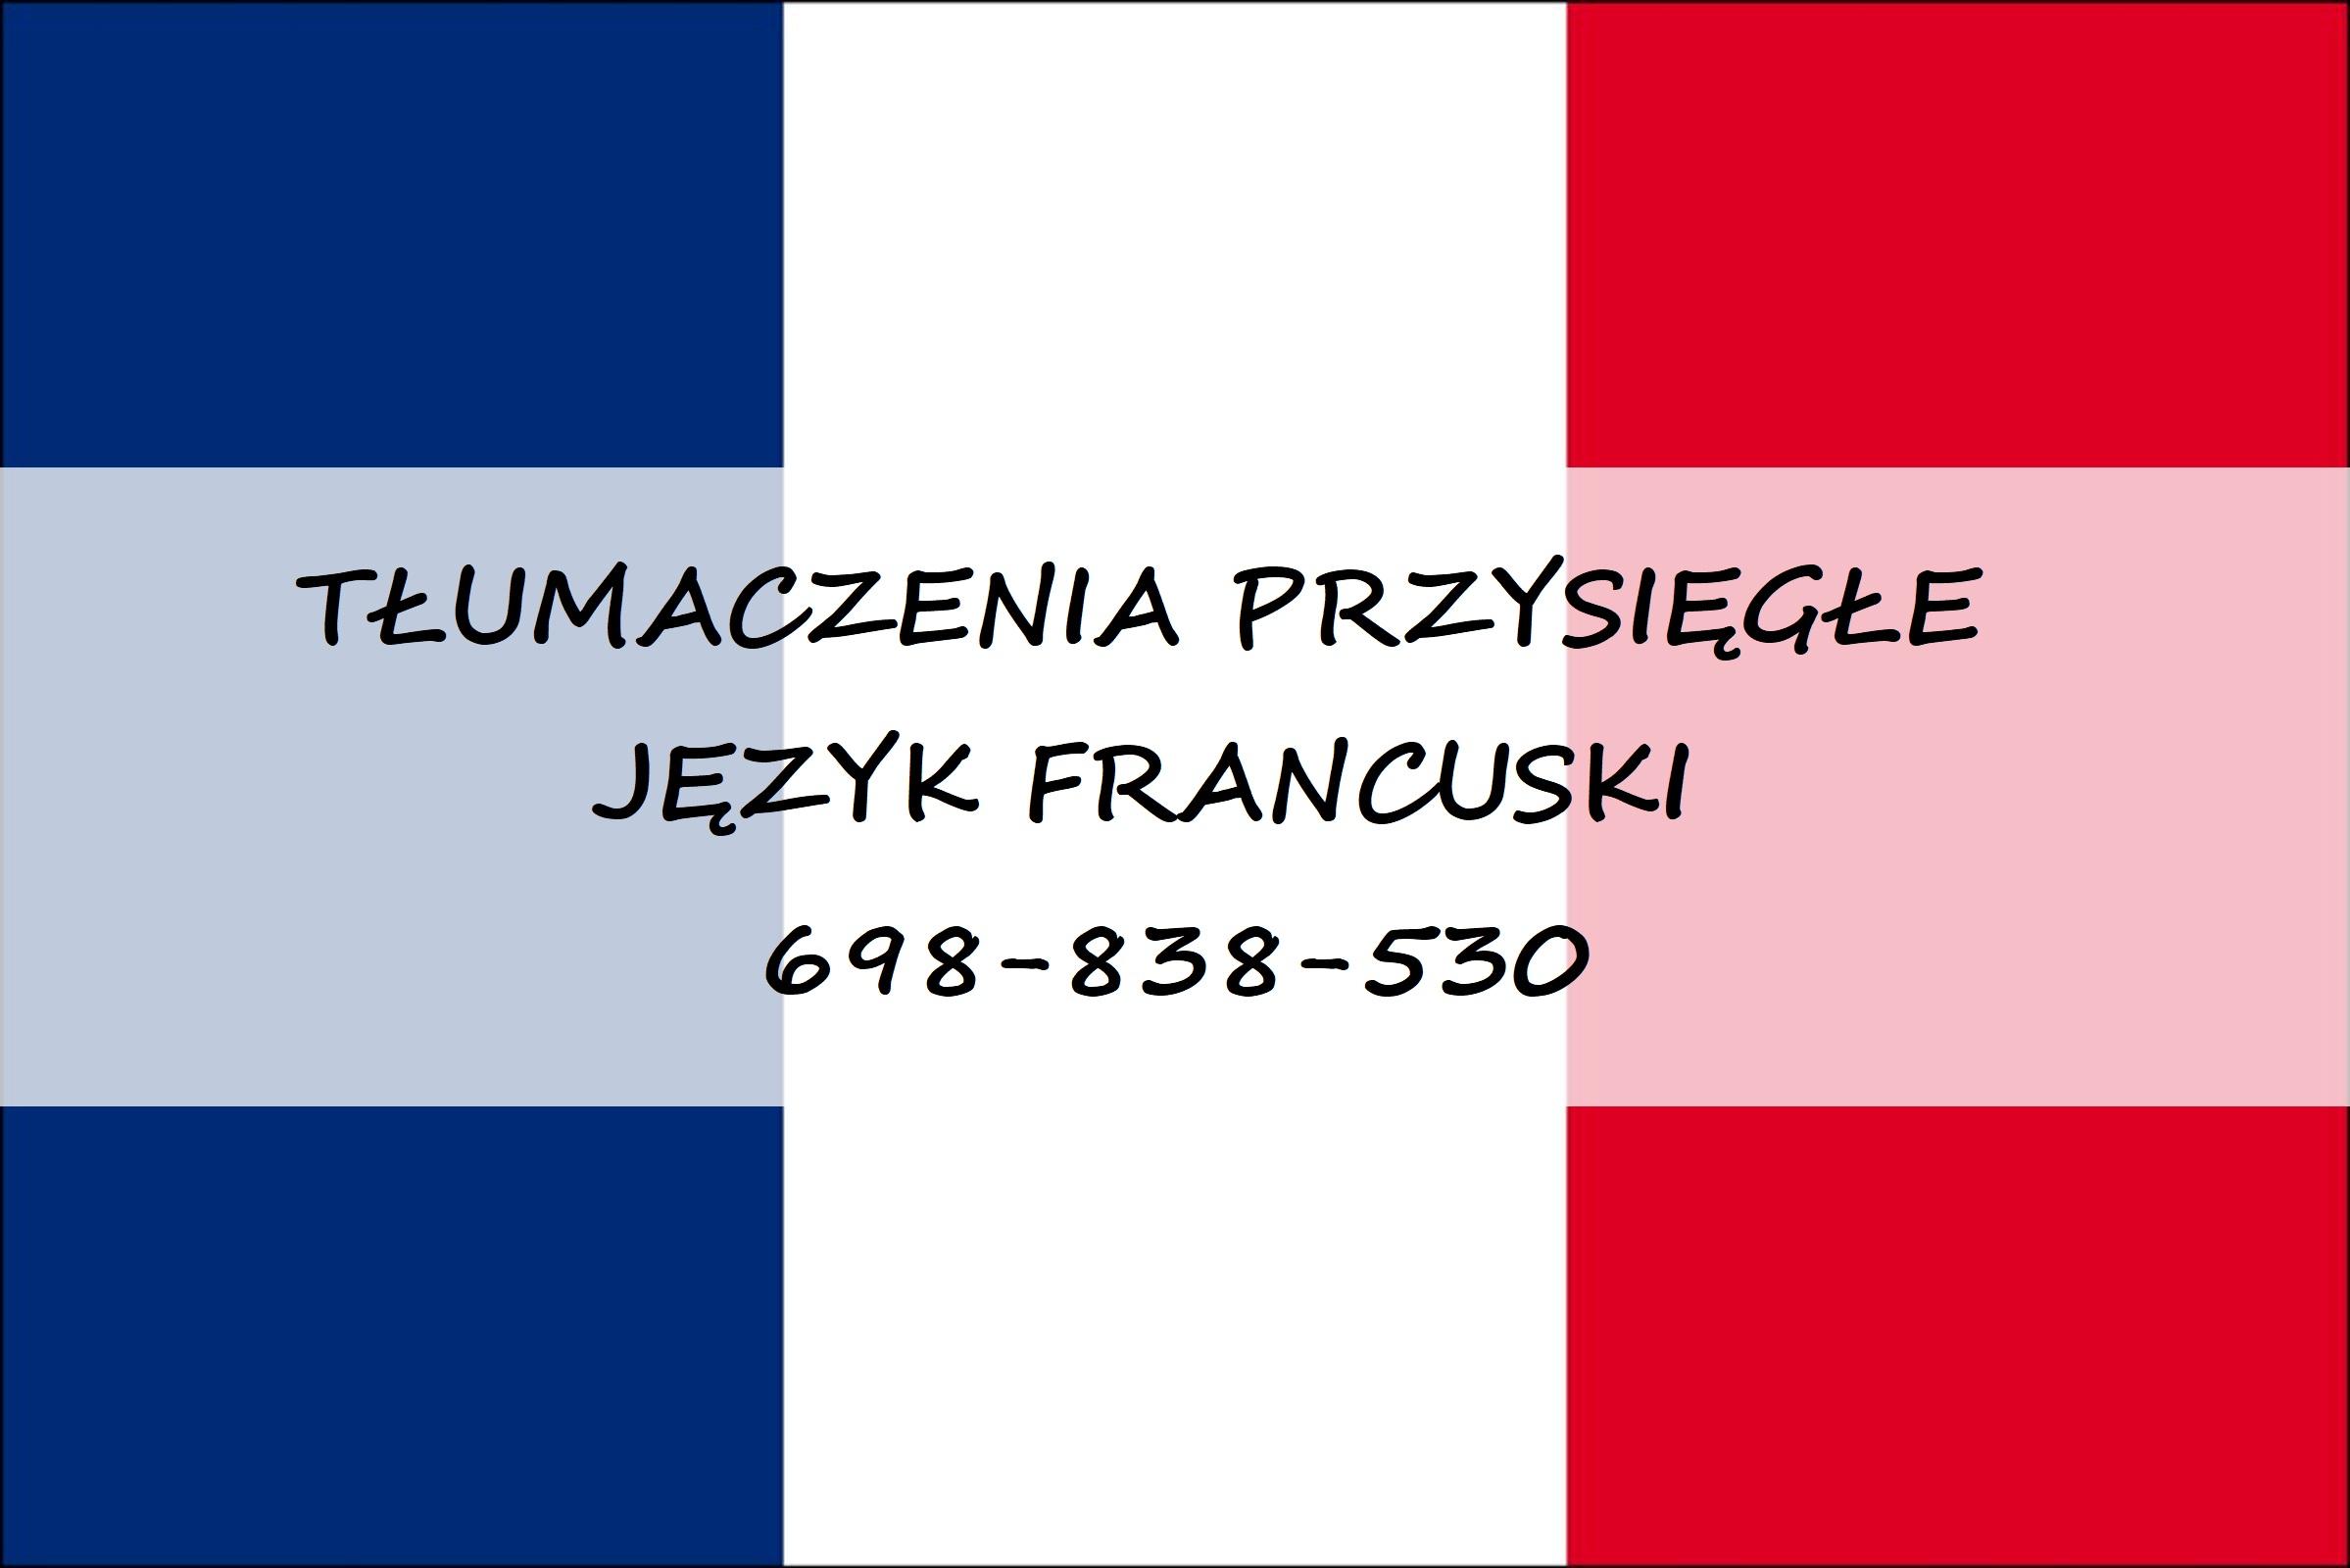 Francuski Tłumaczenia, Tłumaczenia przysięgłę Francuskie, Wołomin, mazowieckie